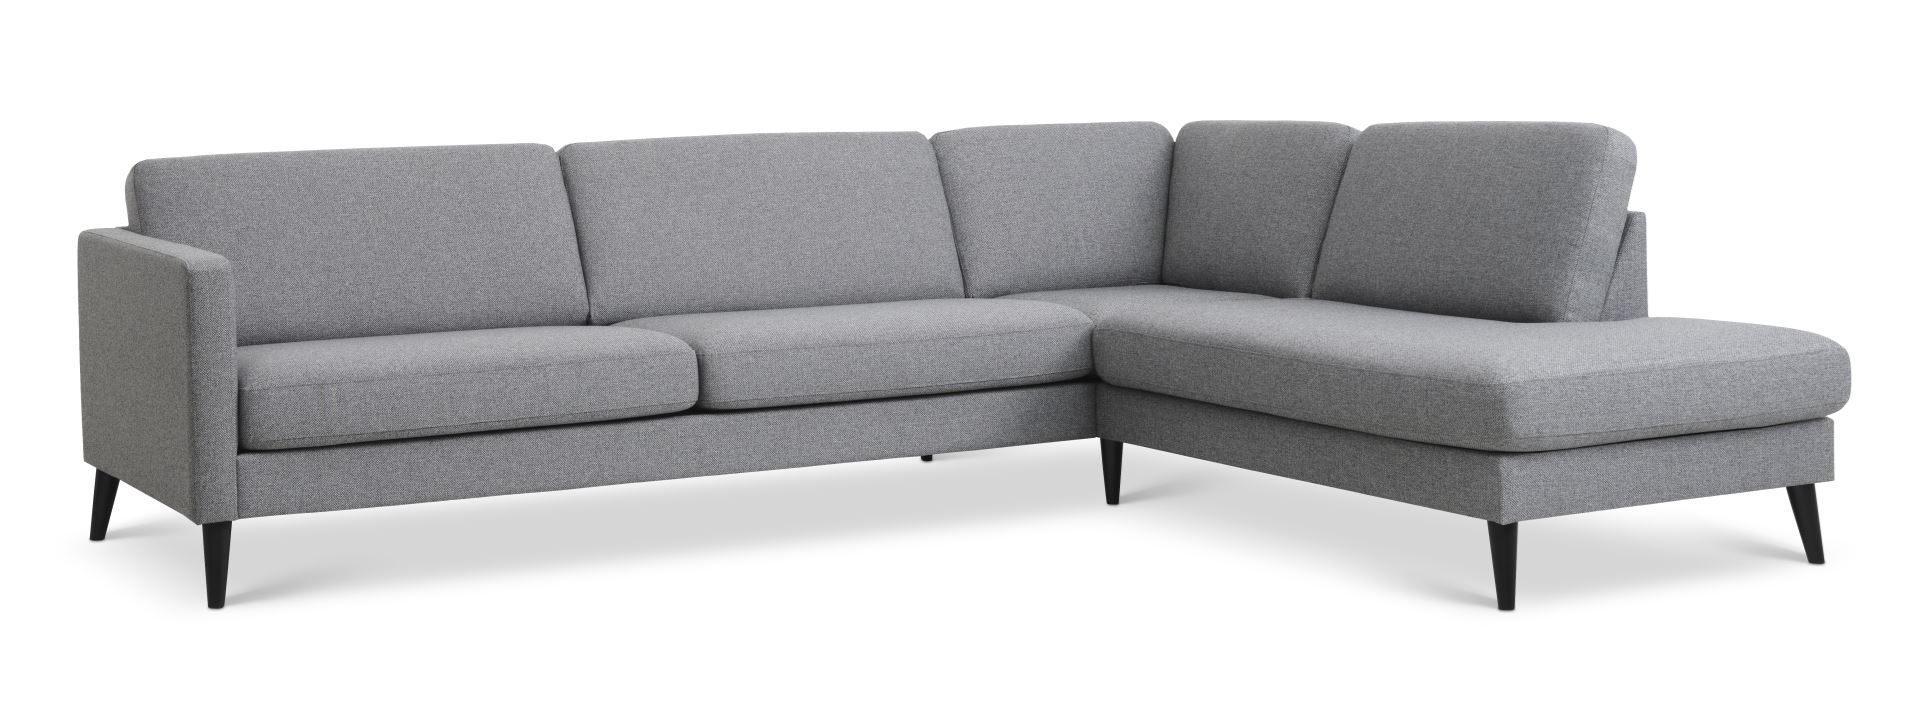 Ask sæt 61 stor OE sofa, m. højre chaiselong - lys granitgrå polyester stof og sort træ